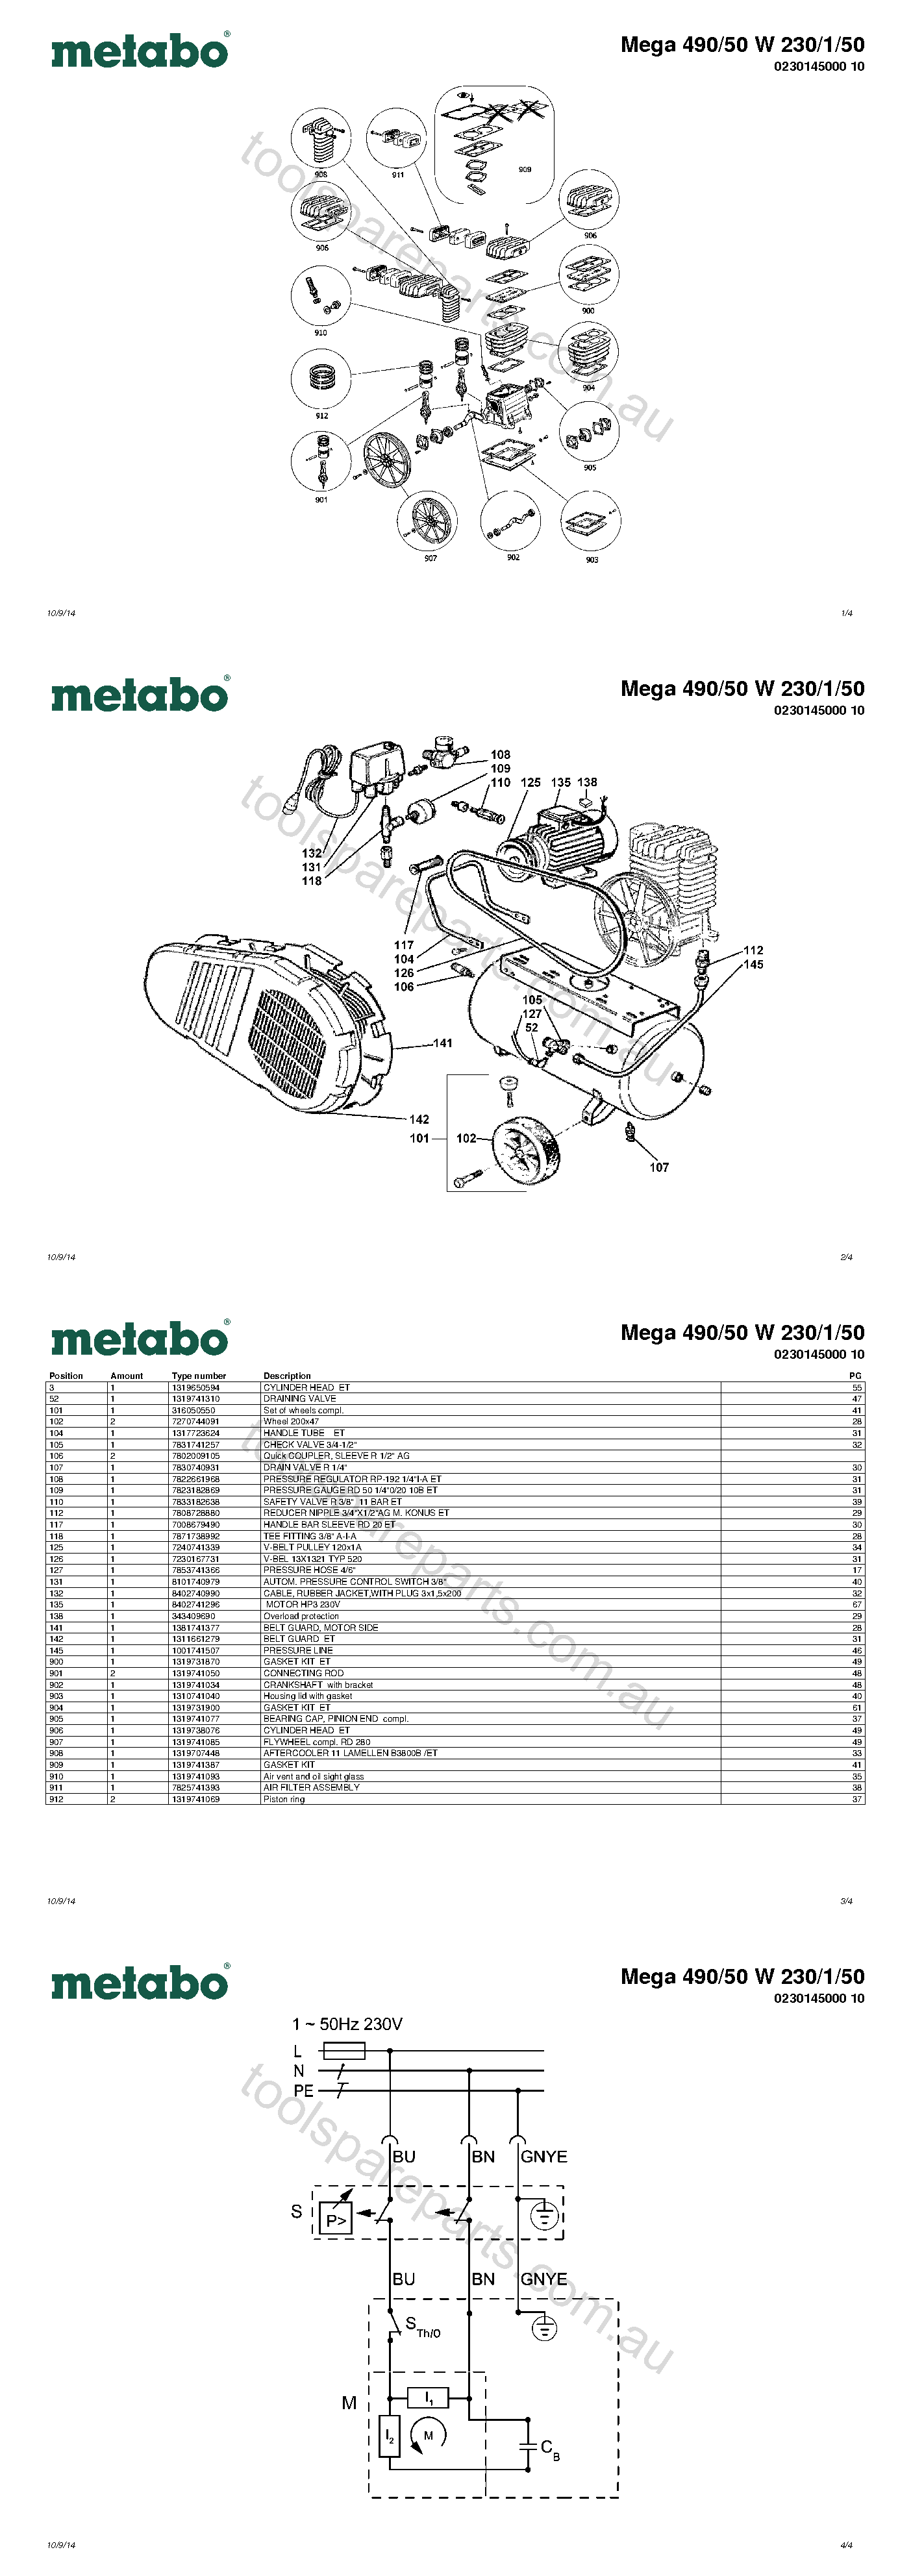 Metabo Mega 490/50 W 230/1/50 0230145000 10  Diagram 1